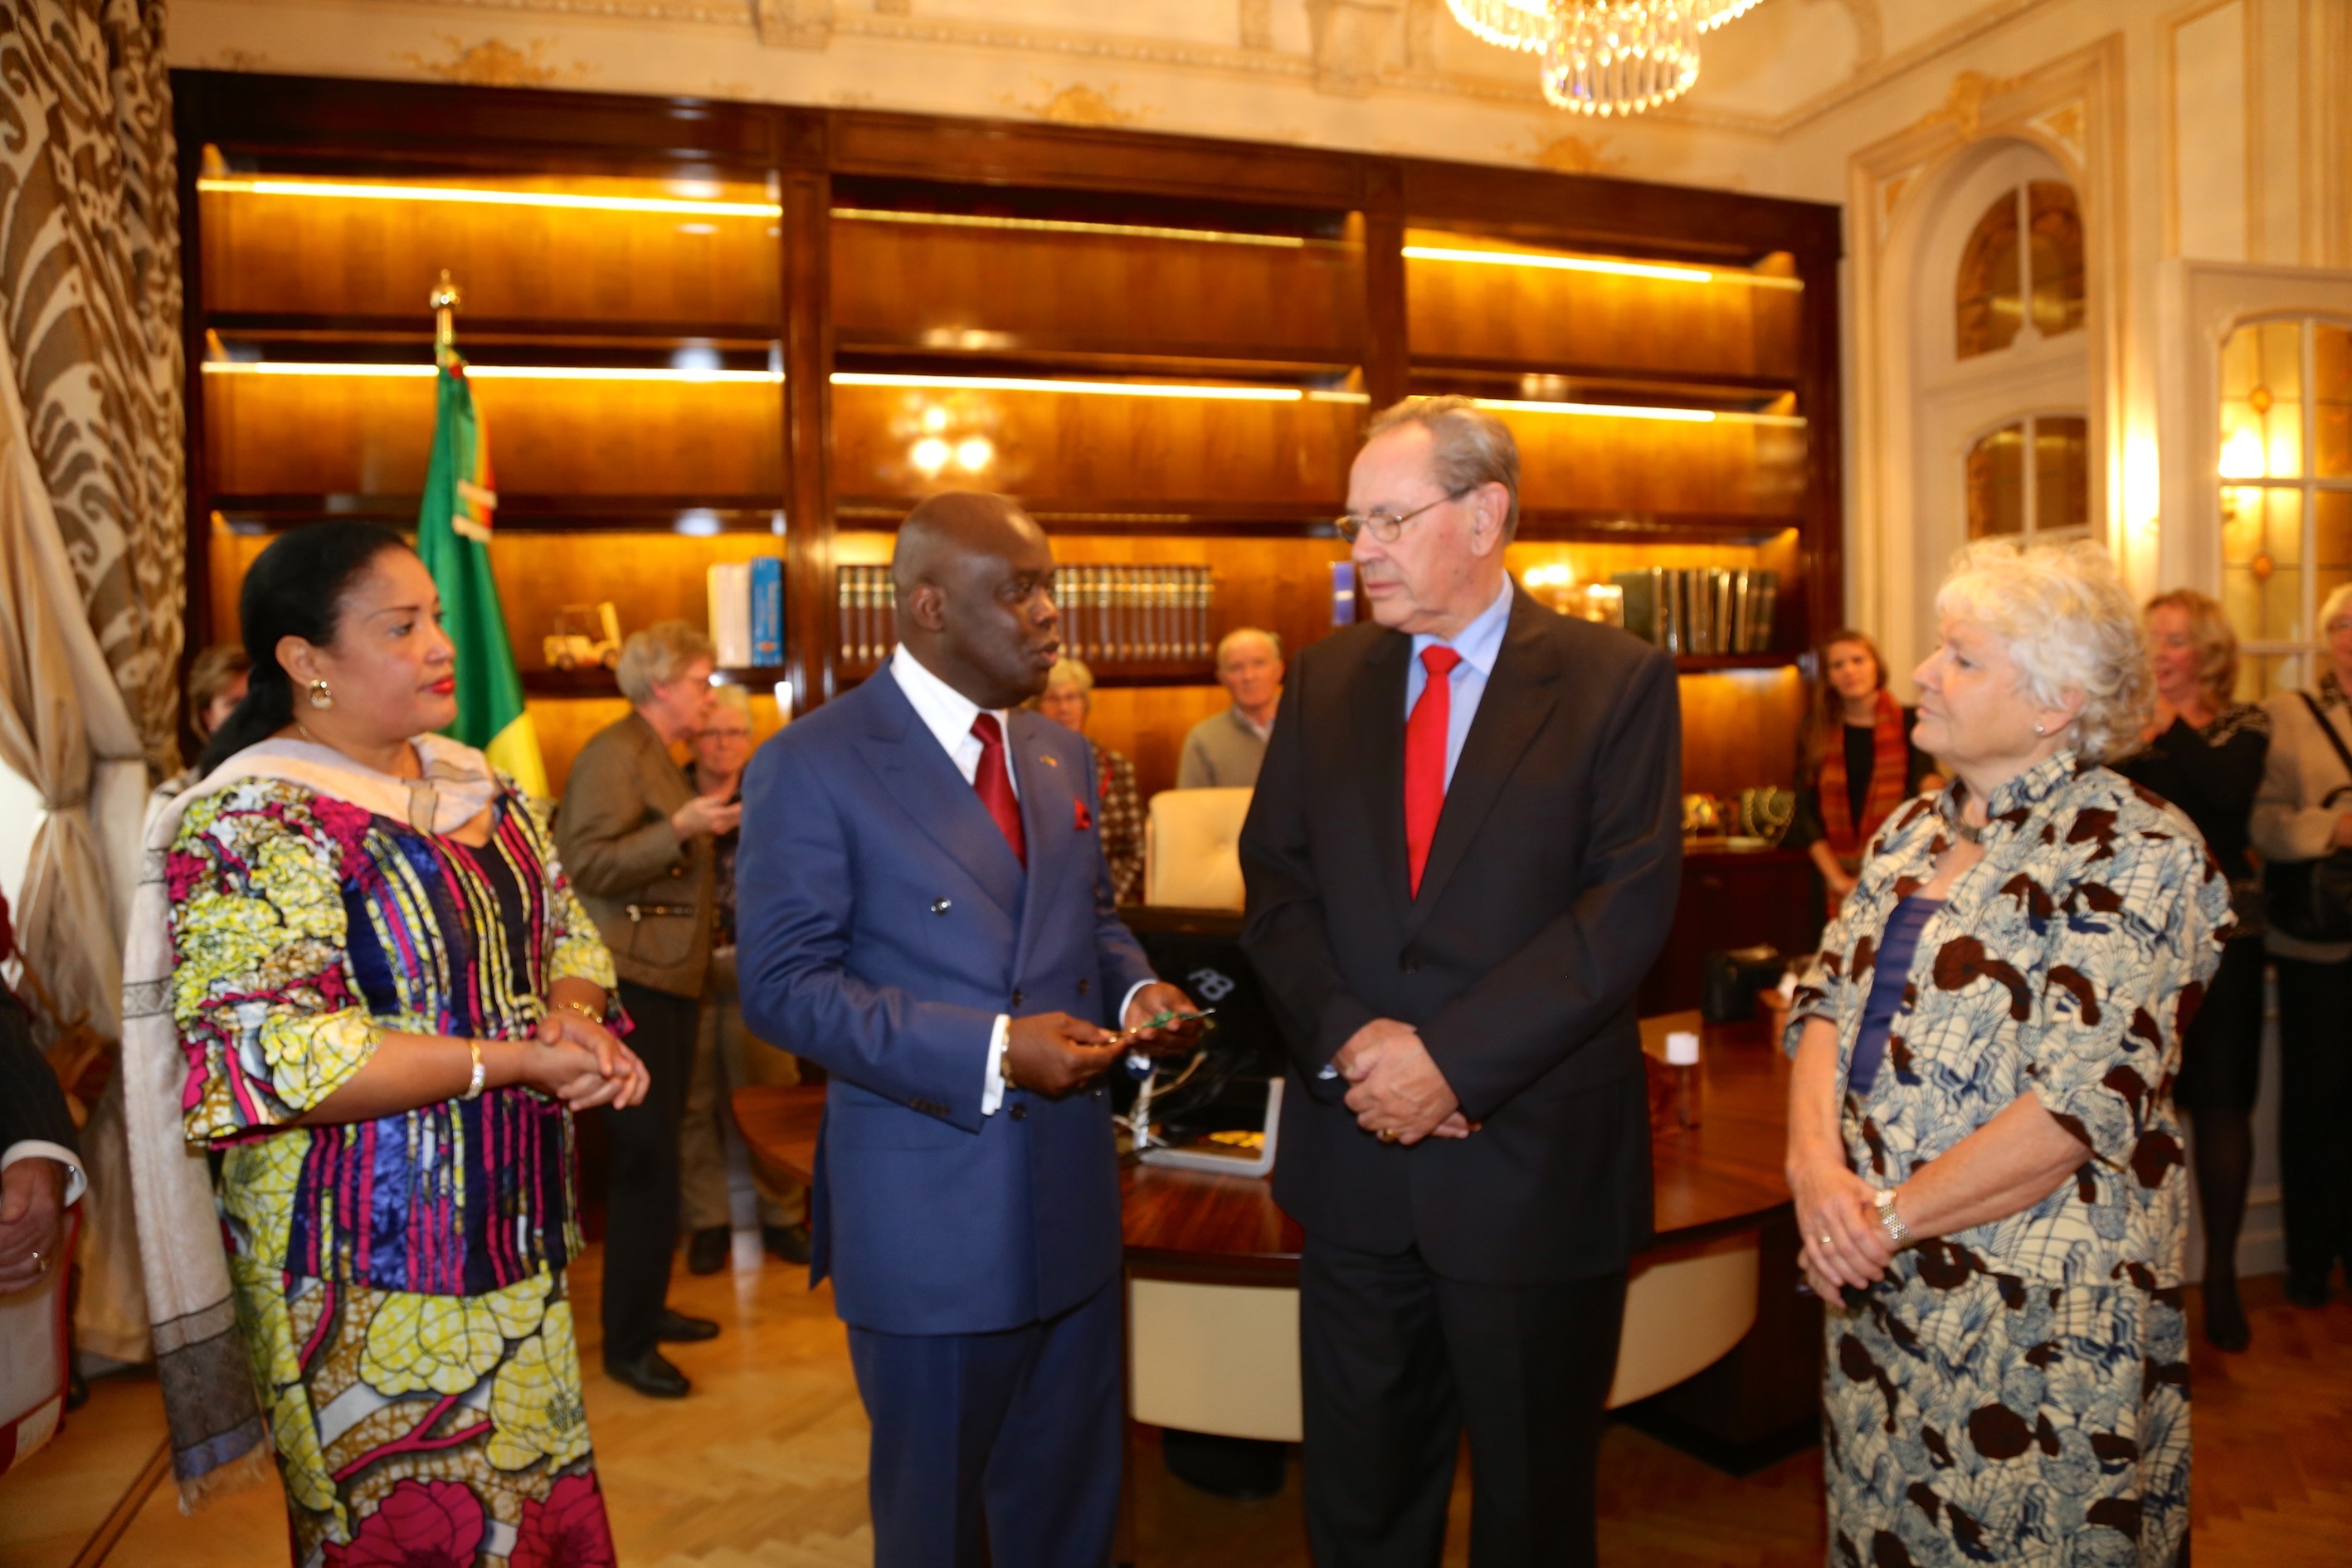 L'ambassadeur Roger Julien Menga, accompagné de son épouse, félicitent Meüs van der Poel